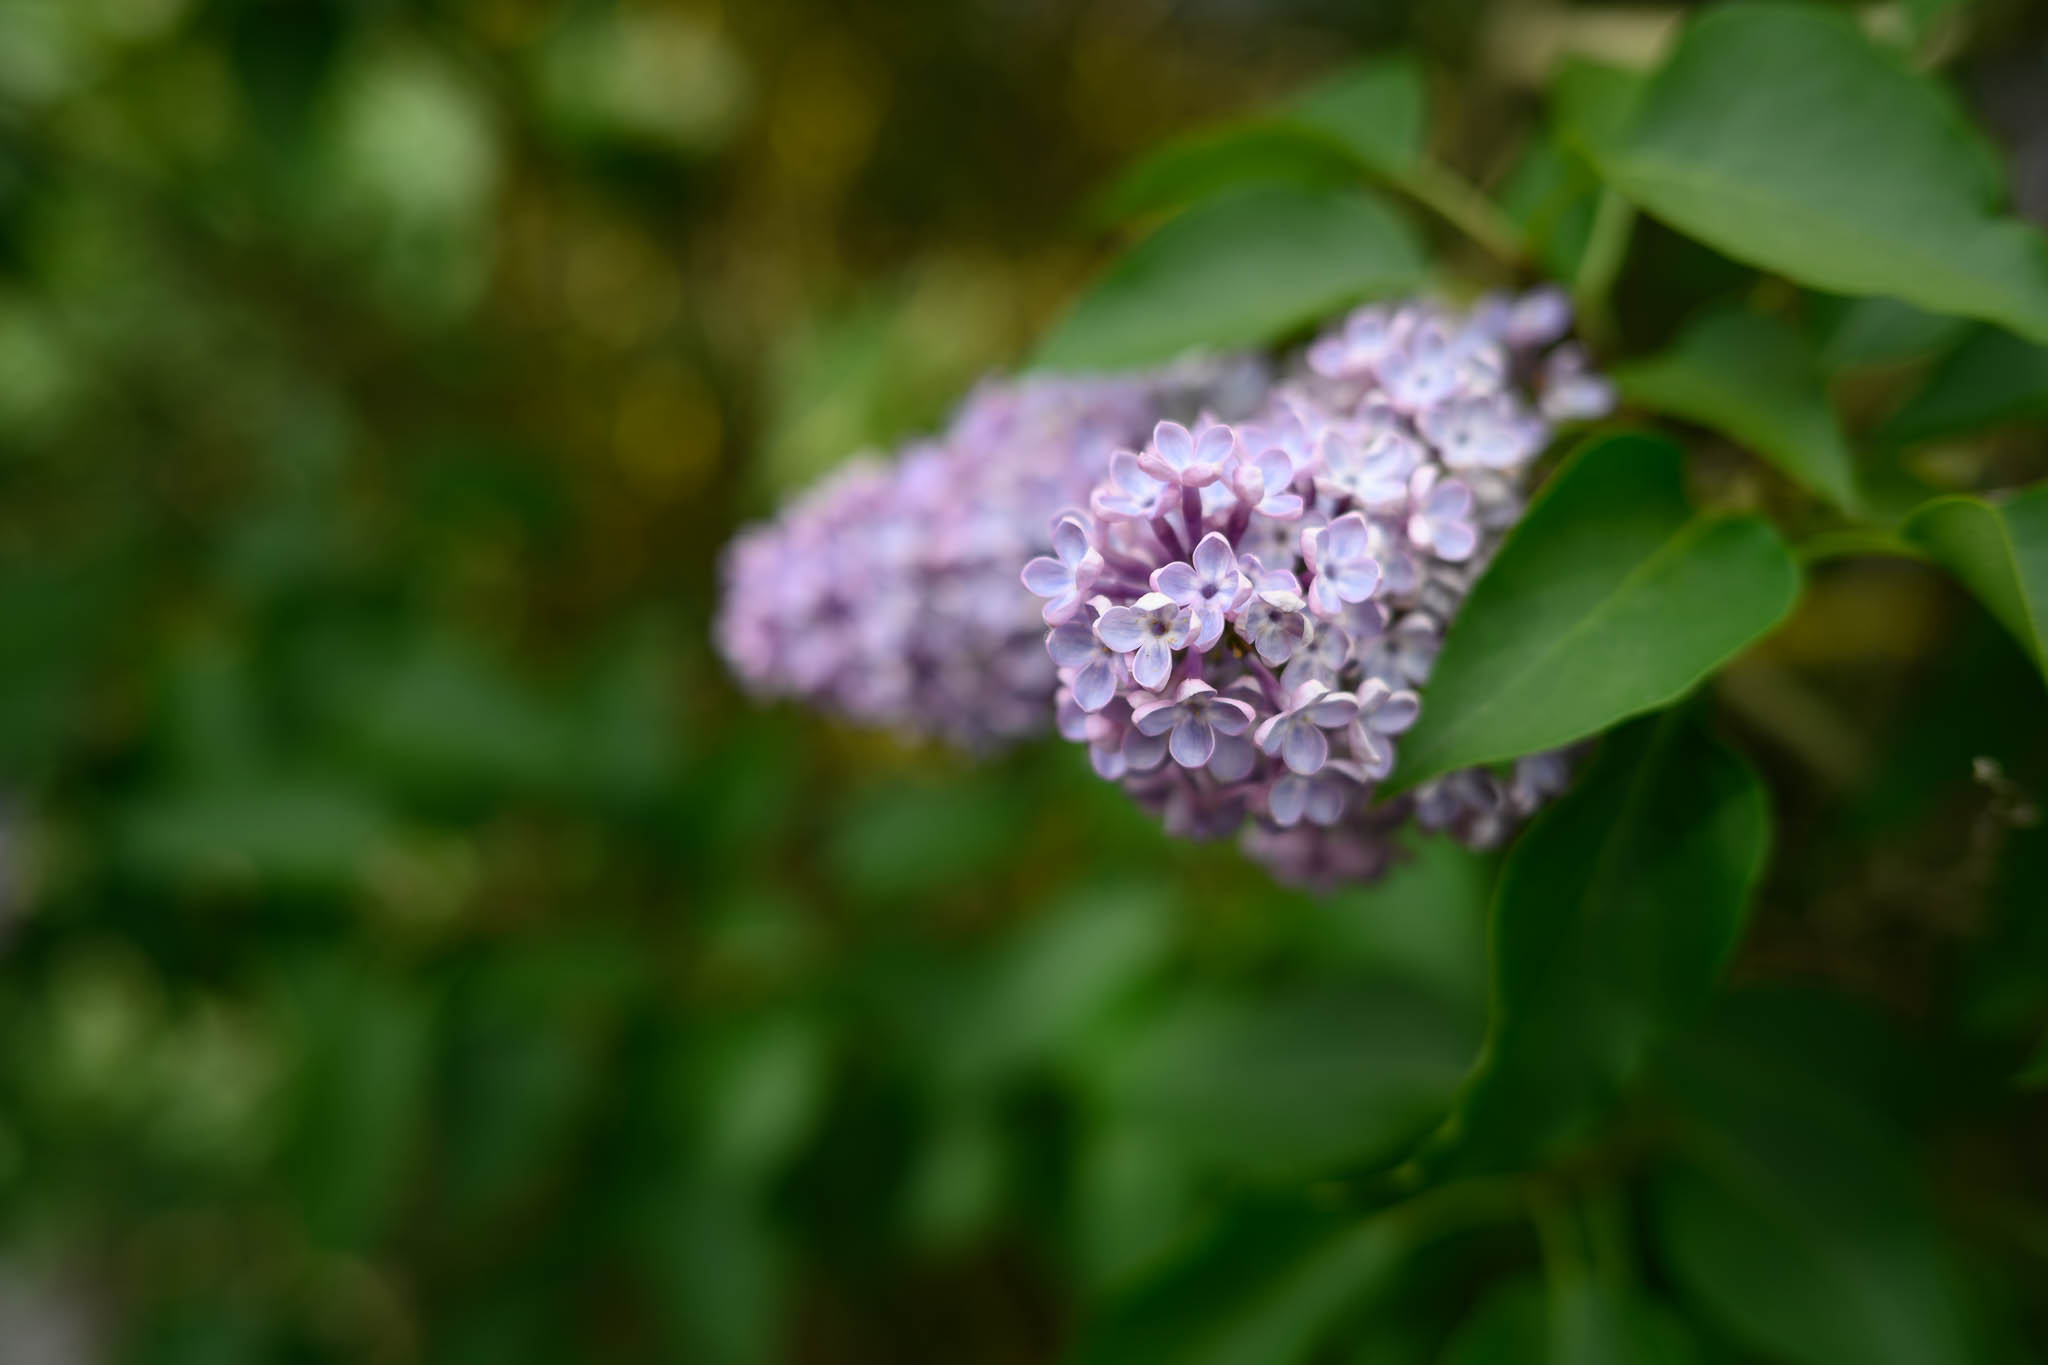 Testfoto mit dem Nikkor Z 40mm f/2 bei Offenblende mit Blüten